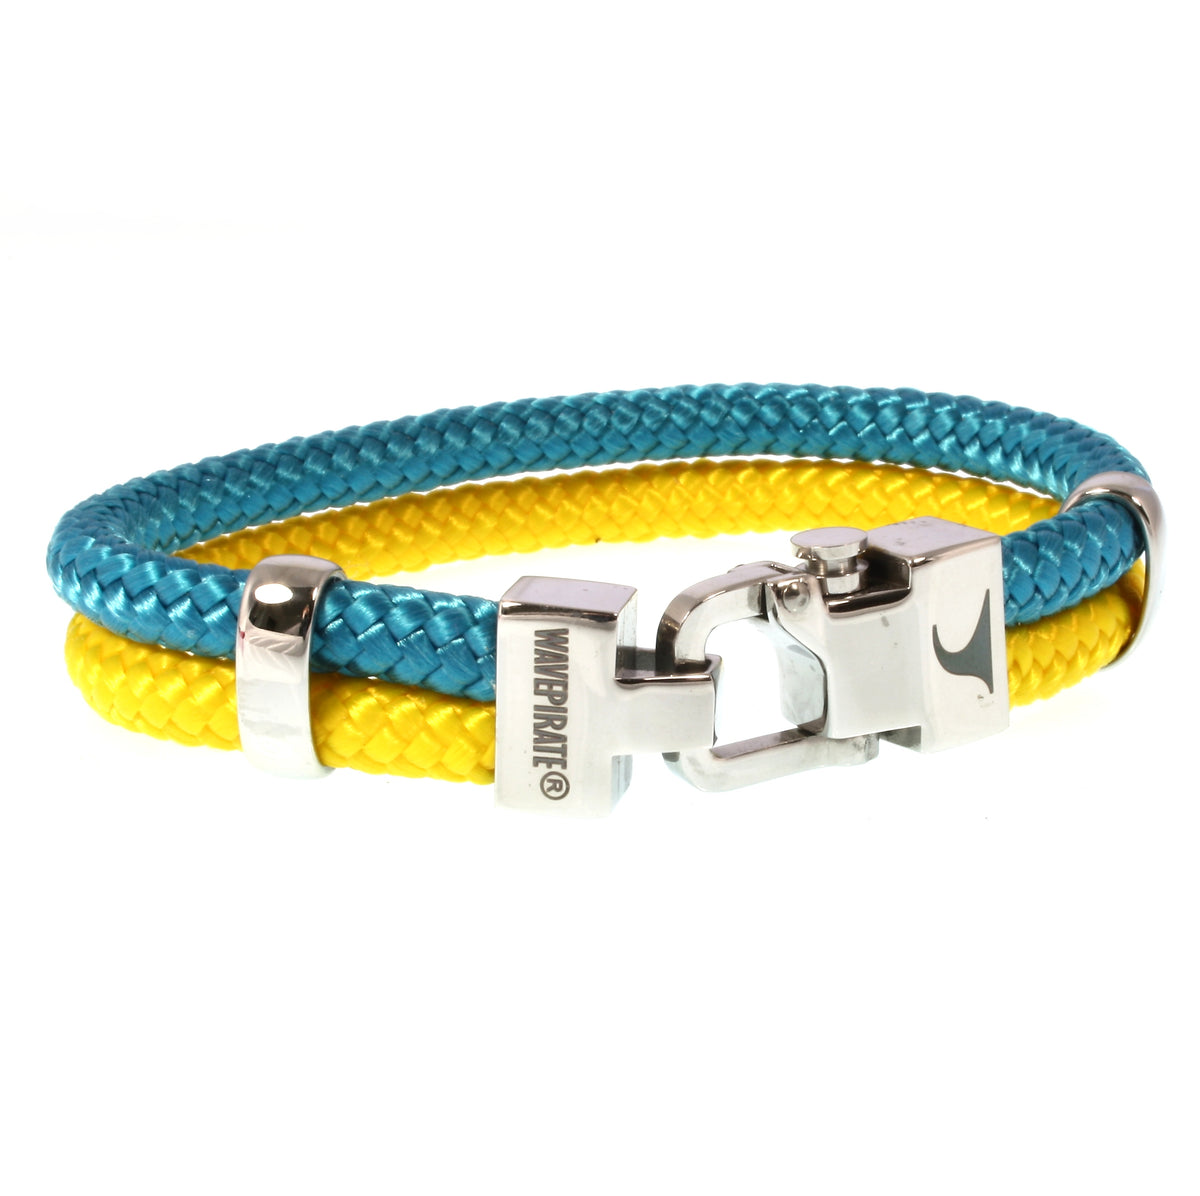 Herren-Segeltau-Armband-Turn-blau-gelb-geflochten-Edelstahlverschluss-vorn-wavepirate-shop-st